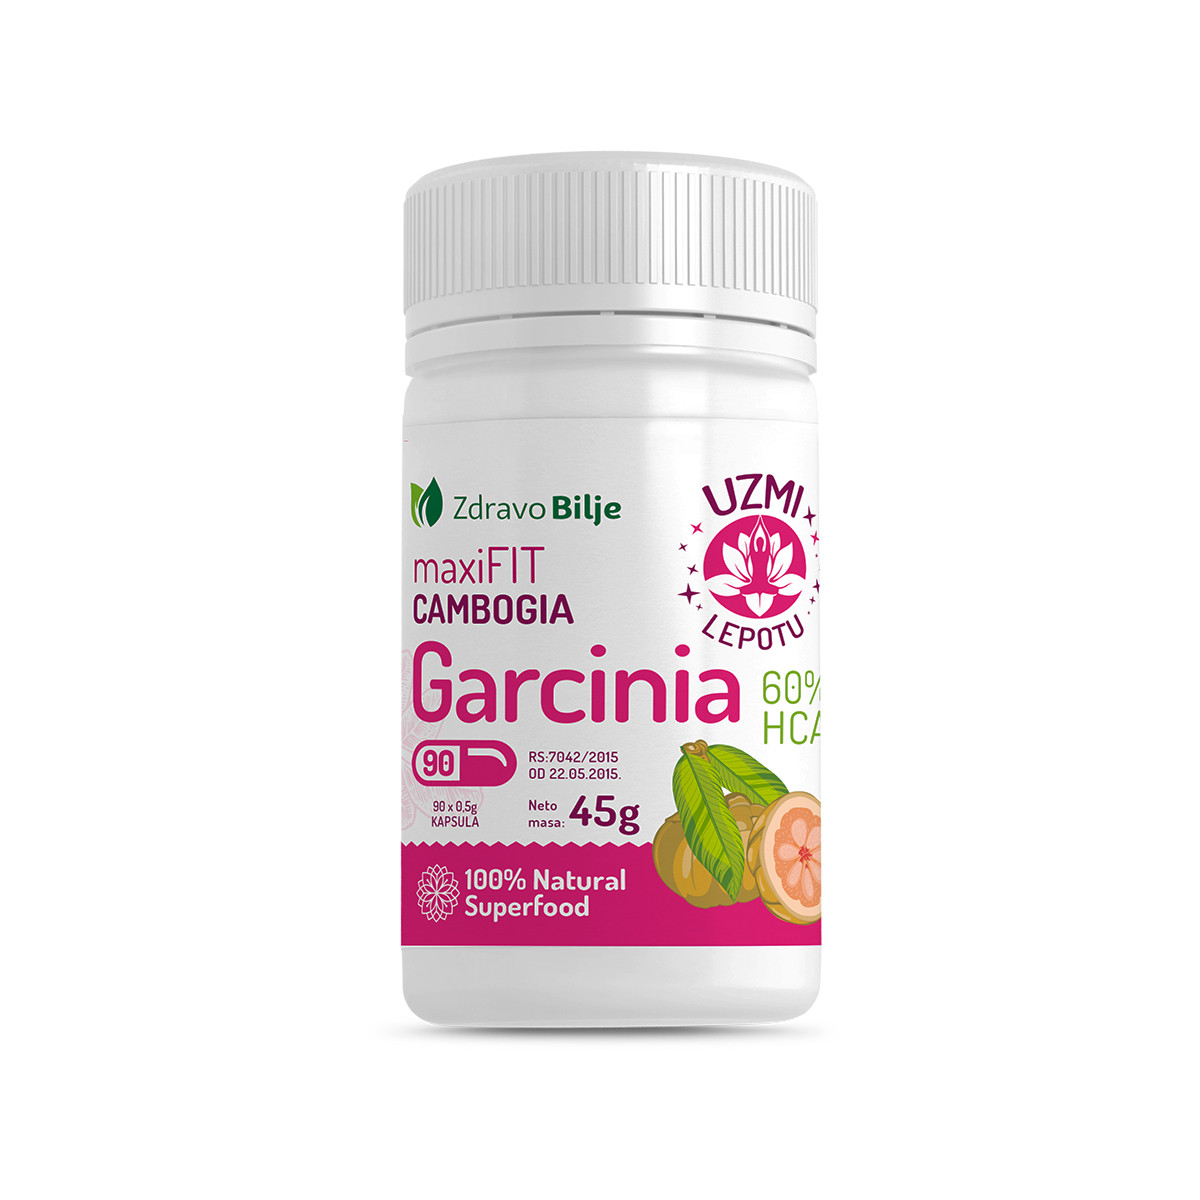 Garcinia cambogia maxi fit 60% HCA 90 kapsula 